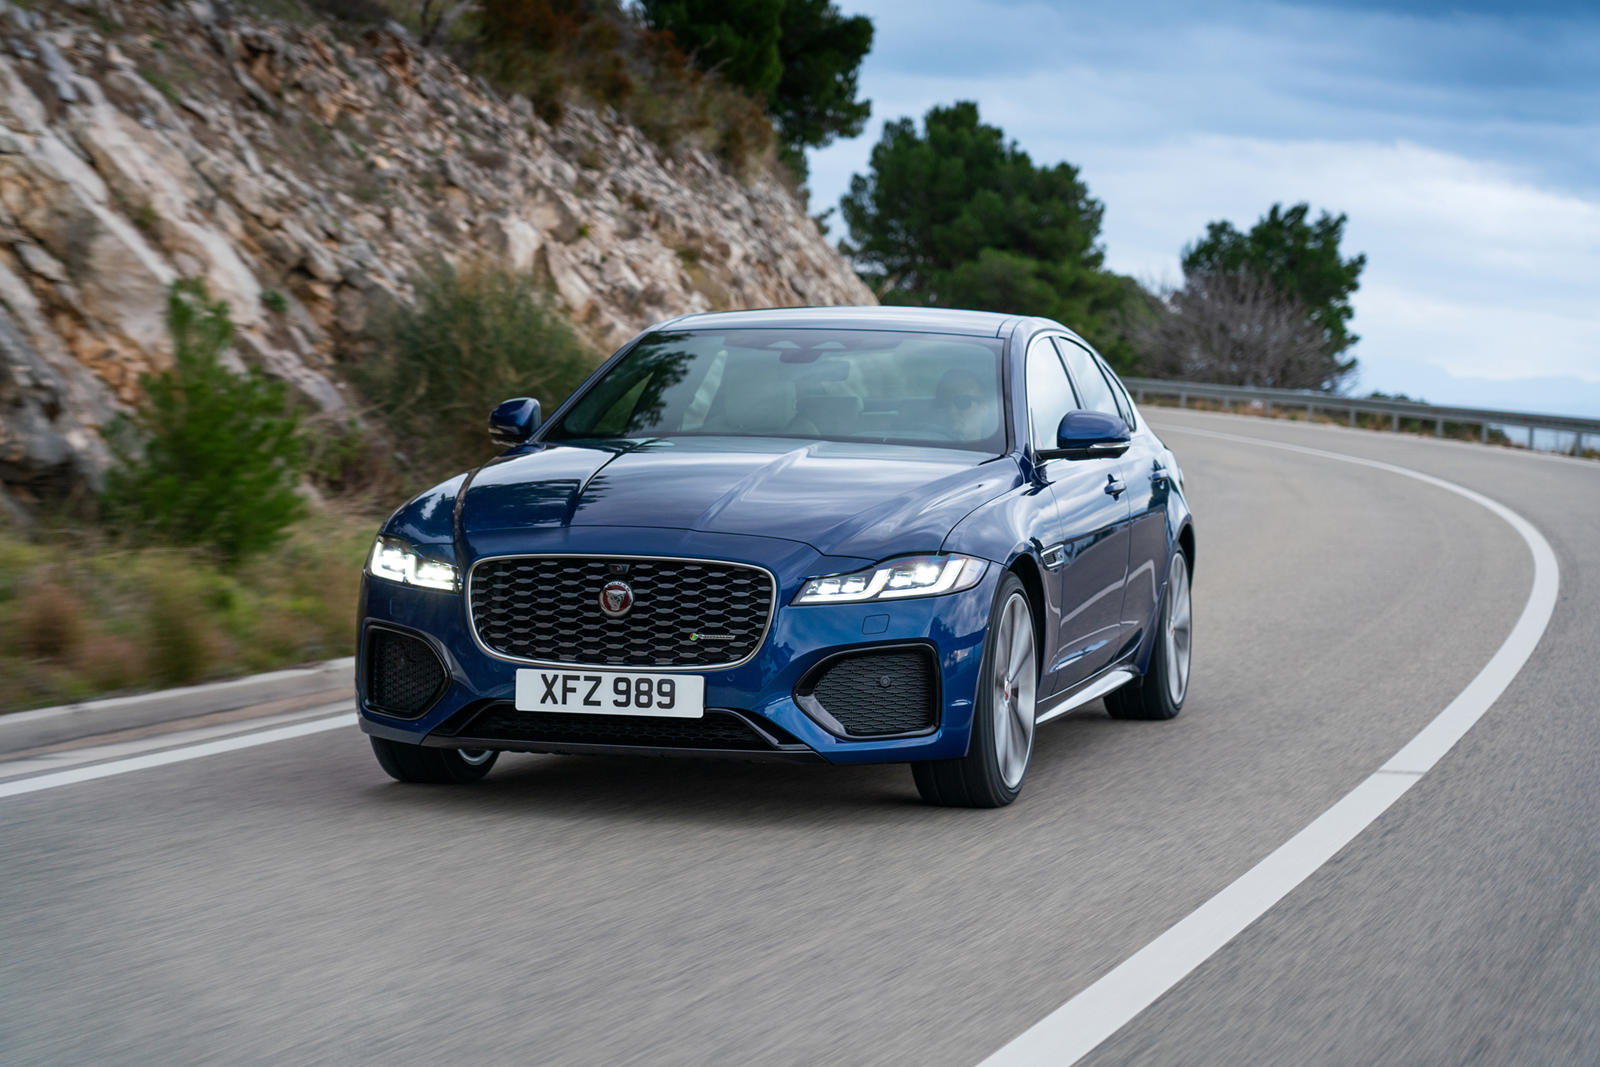 XF теперь является седаном Jaguar начального уровня, поэтому компания значительно снизила цены по сравнению с прошлым годом.